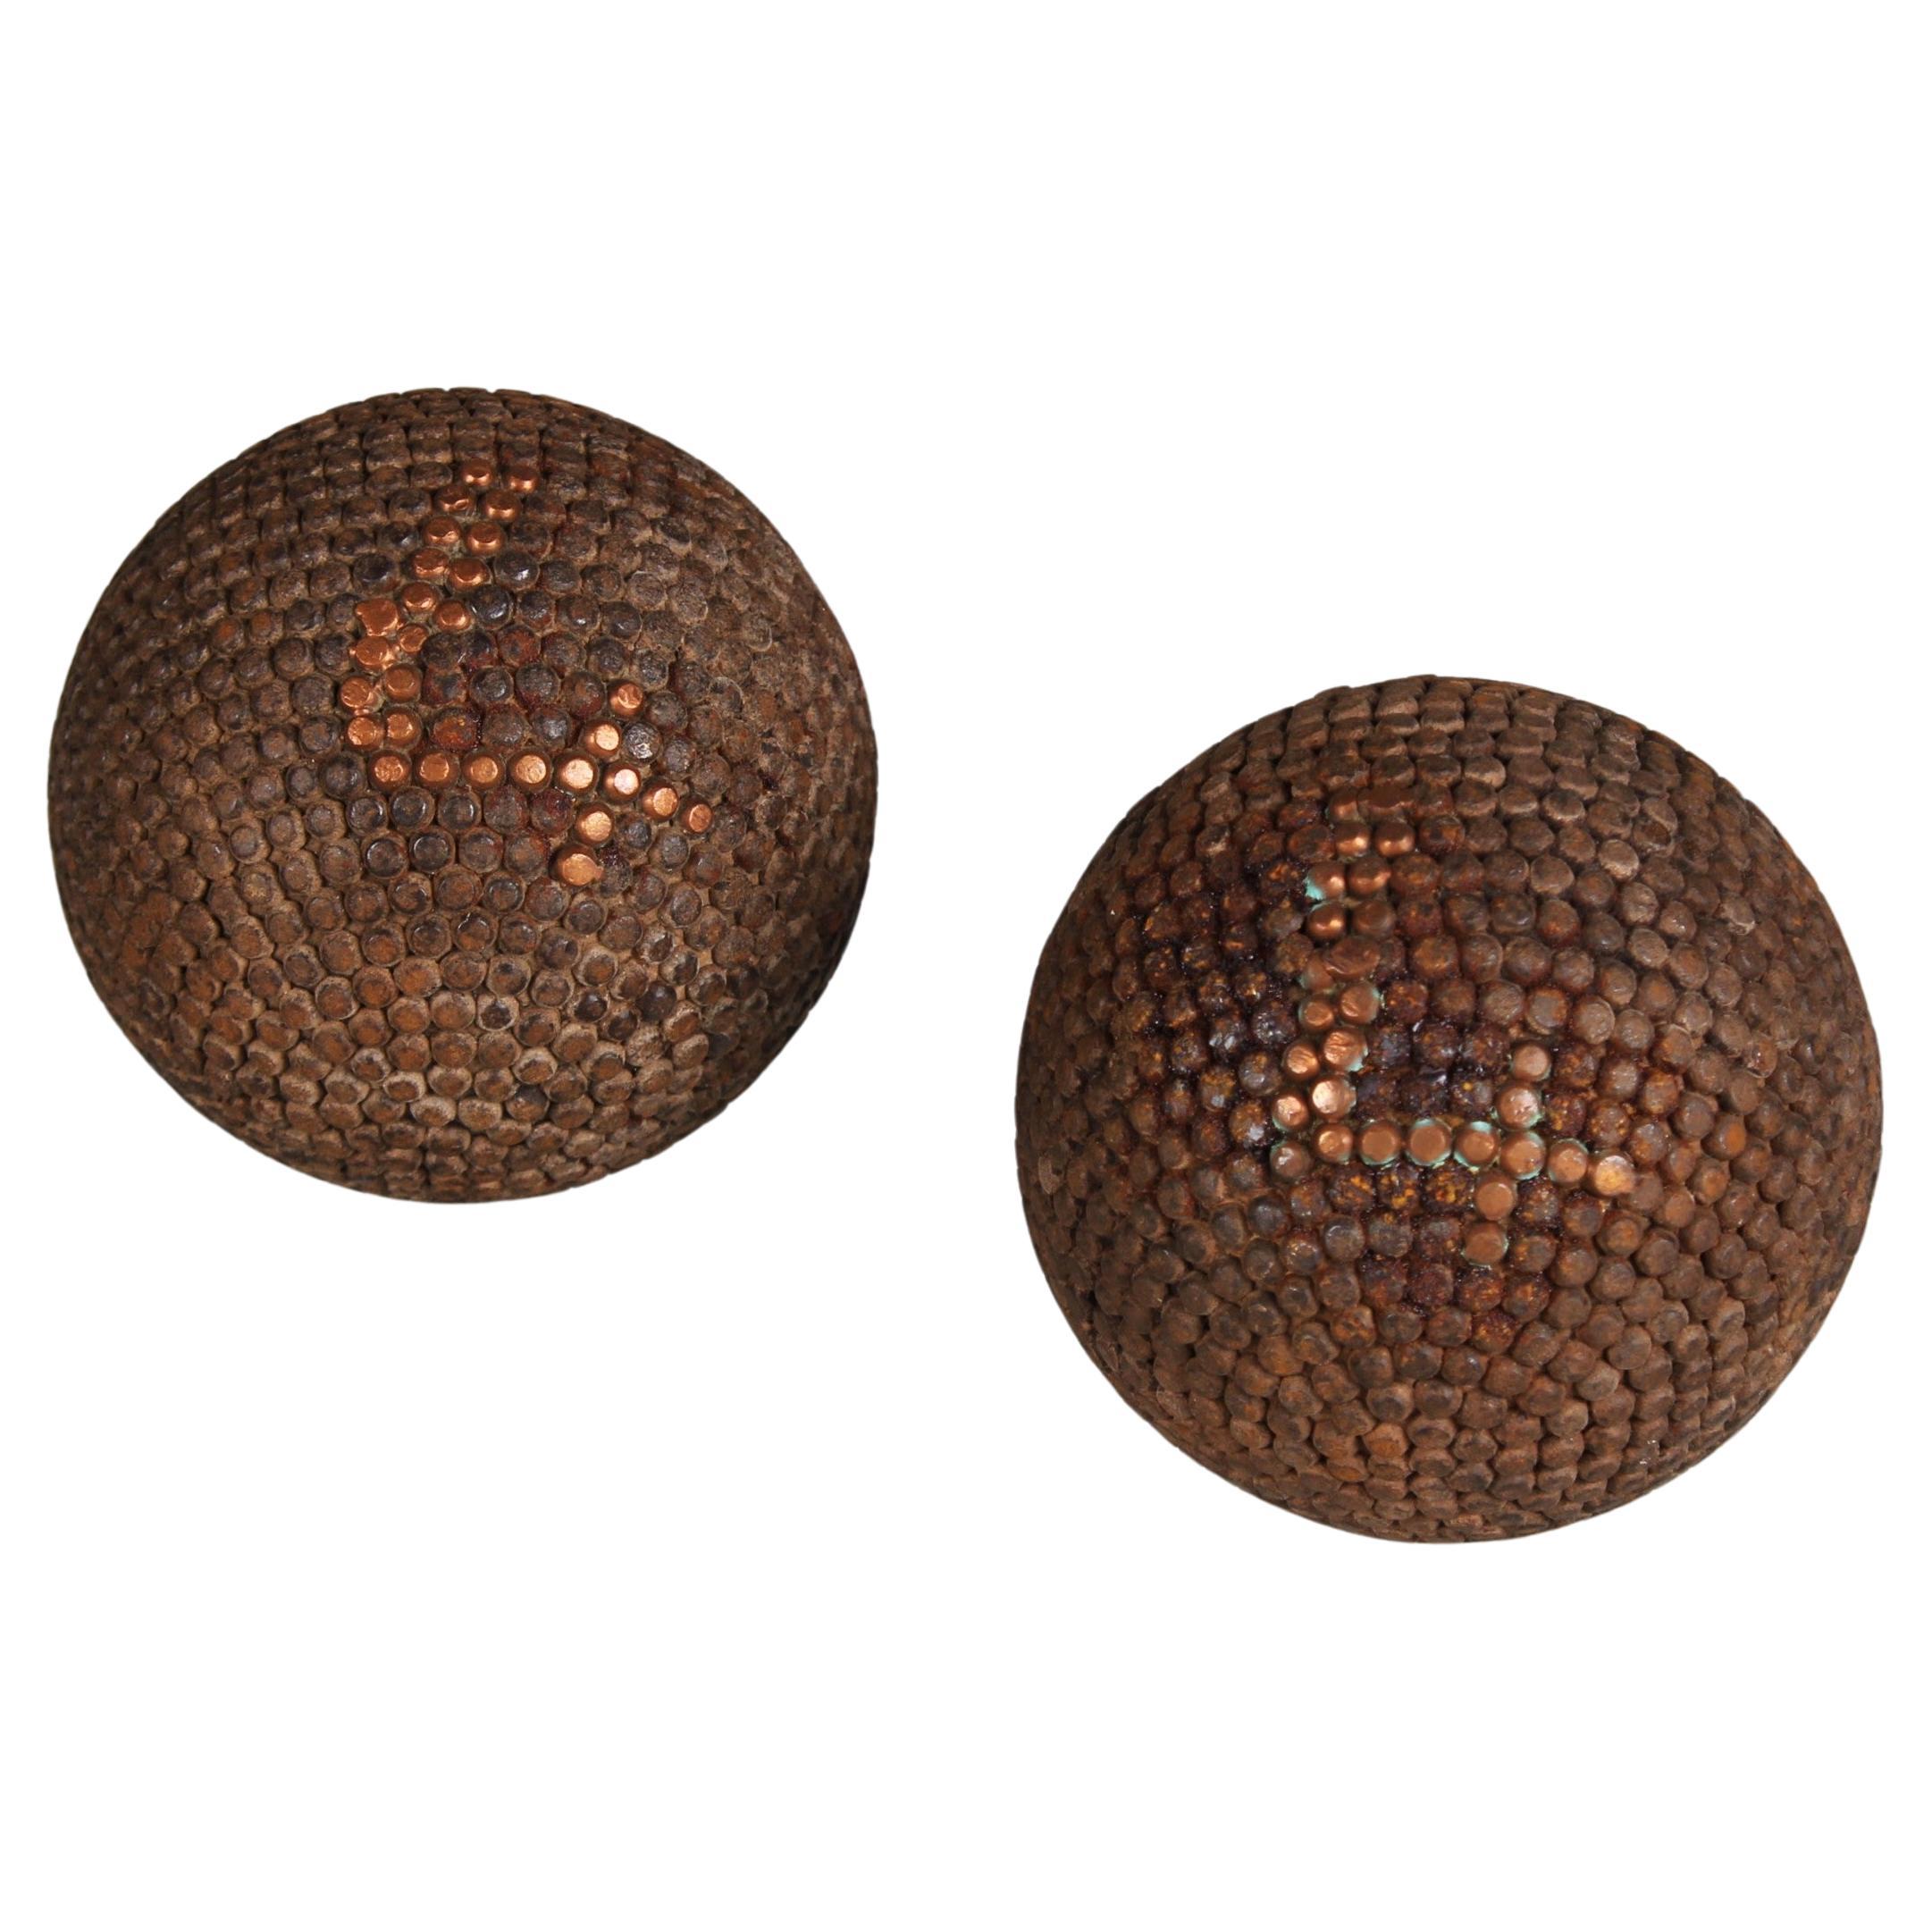 Pair Of Antique Boule Balls "4", Pétanque, 1880s, France, Craftsmanship